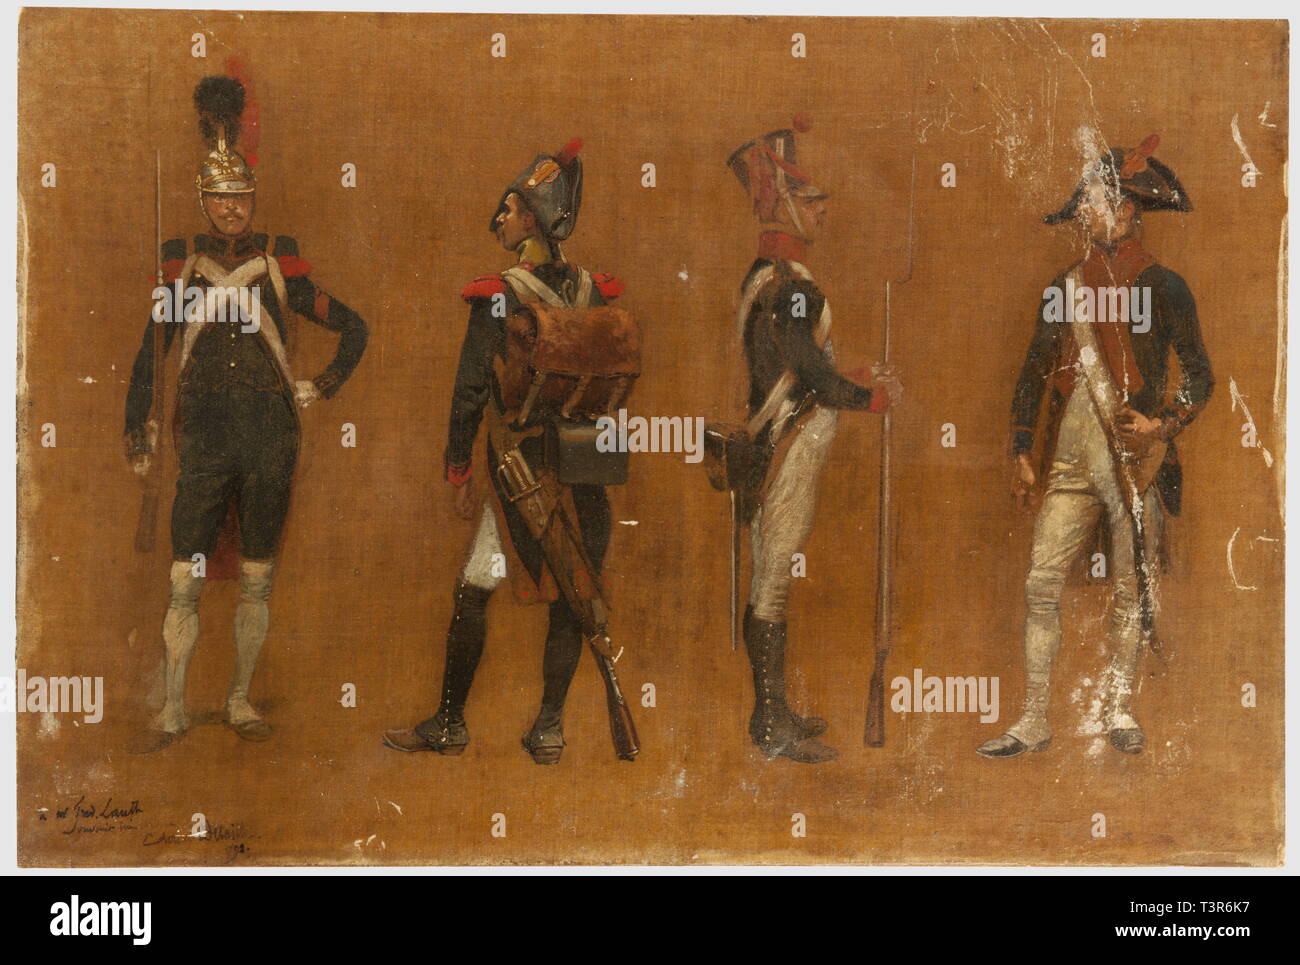 DIRECTOIRE-CONSULAT-EMPIRE 1795-1814, Etude d'uniformes du peintre Edouard Detaille dédiée à un ami, Cette huile (toile marouflée sur bois) représente quatre militaires, de gauche à droite, un sapeur du génie de la Garde (vers 1813), un voltigeur d'infanterie de ligne (vers 1804) portant des épaulettes de grenadier, un tirailleur de l'infanterie de la jeune Garde (vers 1812/1813) et un vétéran de l'infanterie (vers 1805/1806). Hauteur 38,5 cm, largeur 57 cm. Signature et dédicace du peintre en bas à gauche, datée 1792! Ensemble en état moyen, tra, Additional-Rights-Clearance-Info-Not-Available Stock Photo